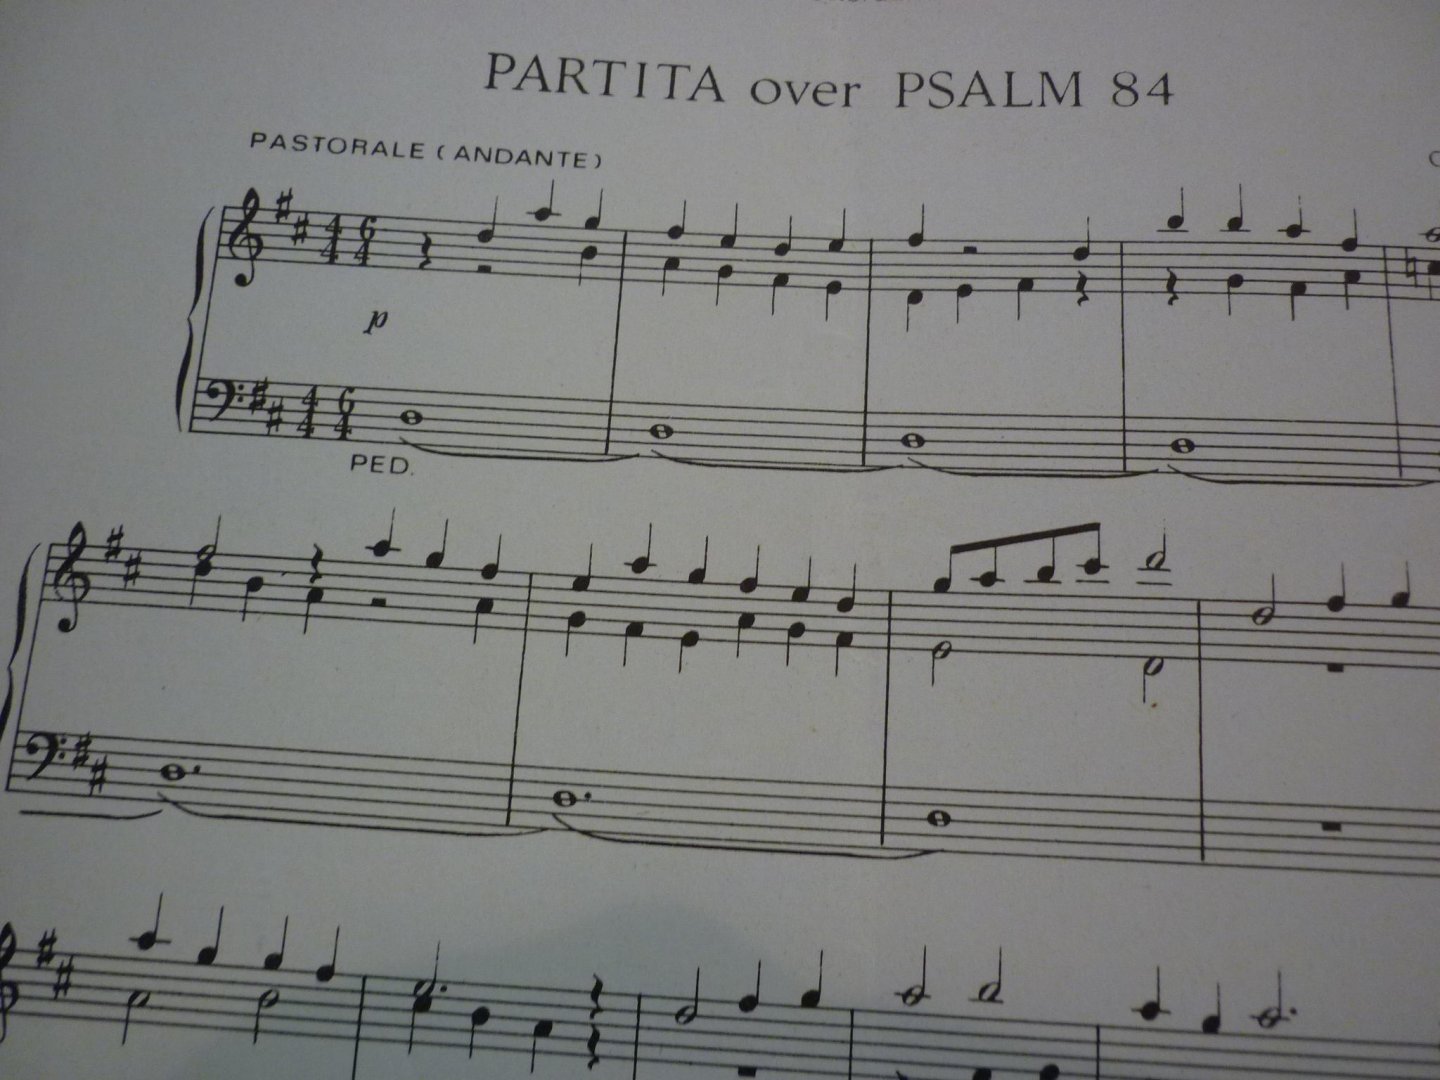 Hansum; Cor - Partita en Fuga over Psalm 84 (Muziek voor- en na de kerkdienst)